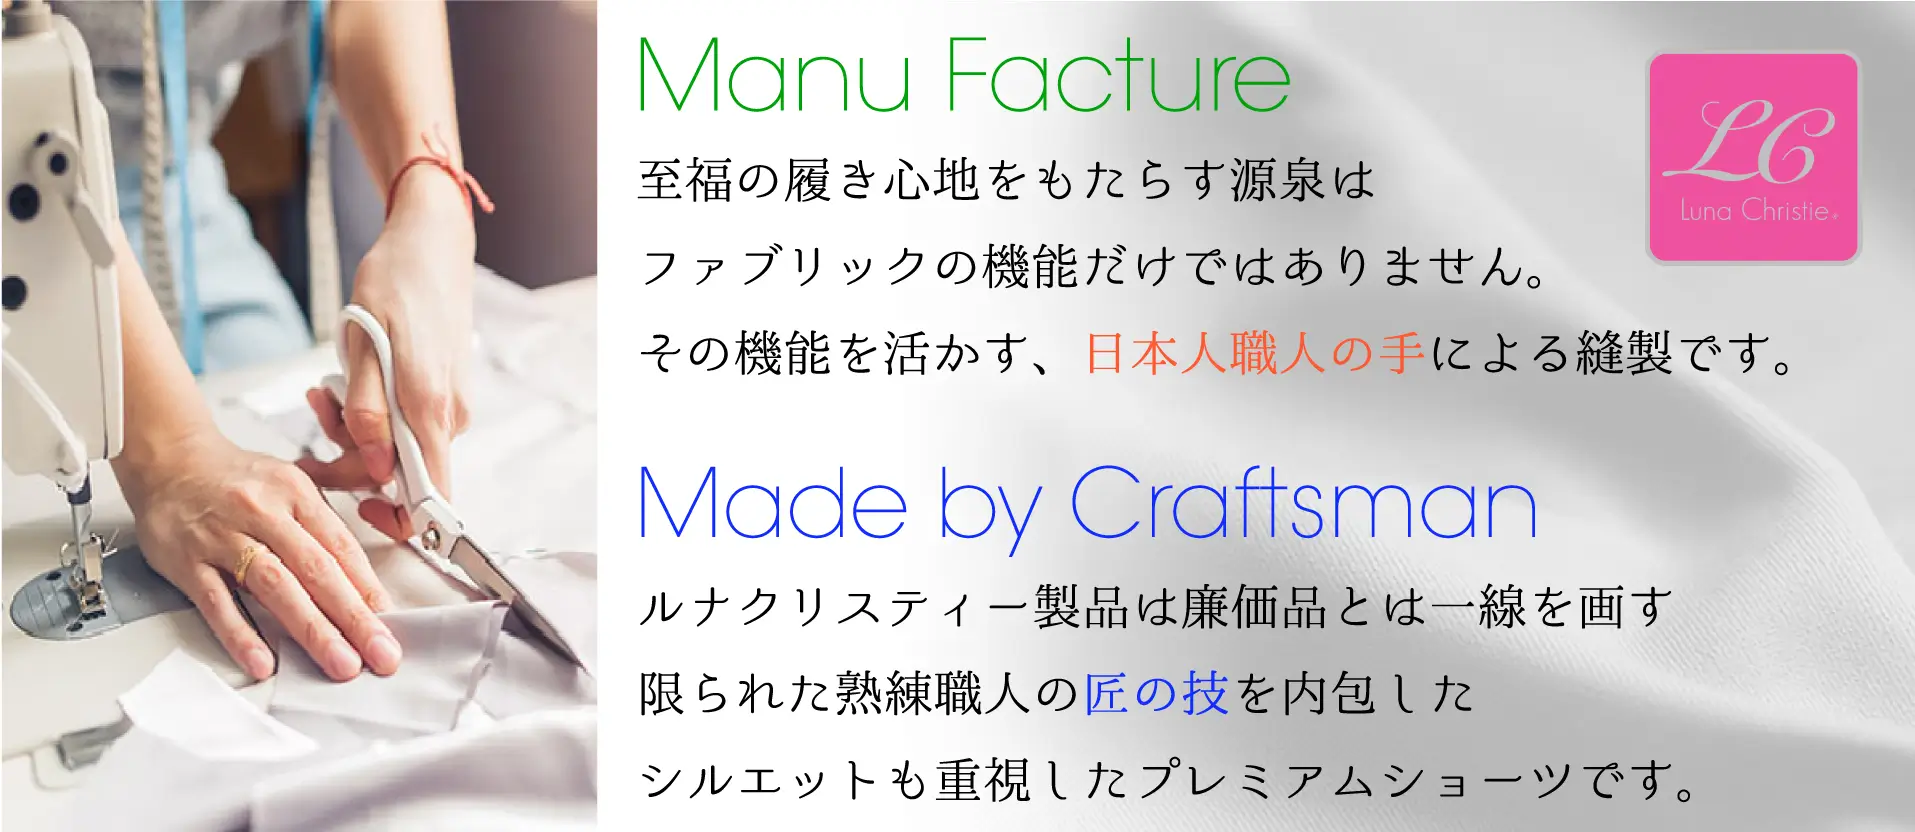 Luna Christie至福の履き心地をもたらす源泉はファブリックの機能だけではありません。その機能を活かす、日本人職人の手による縫製です。